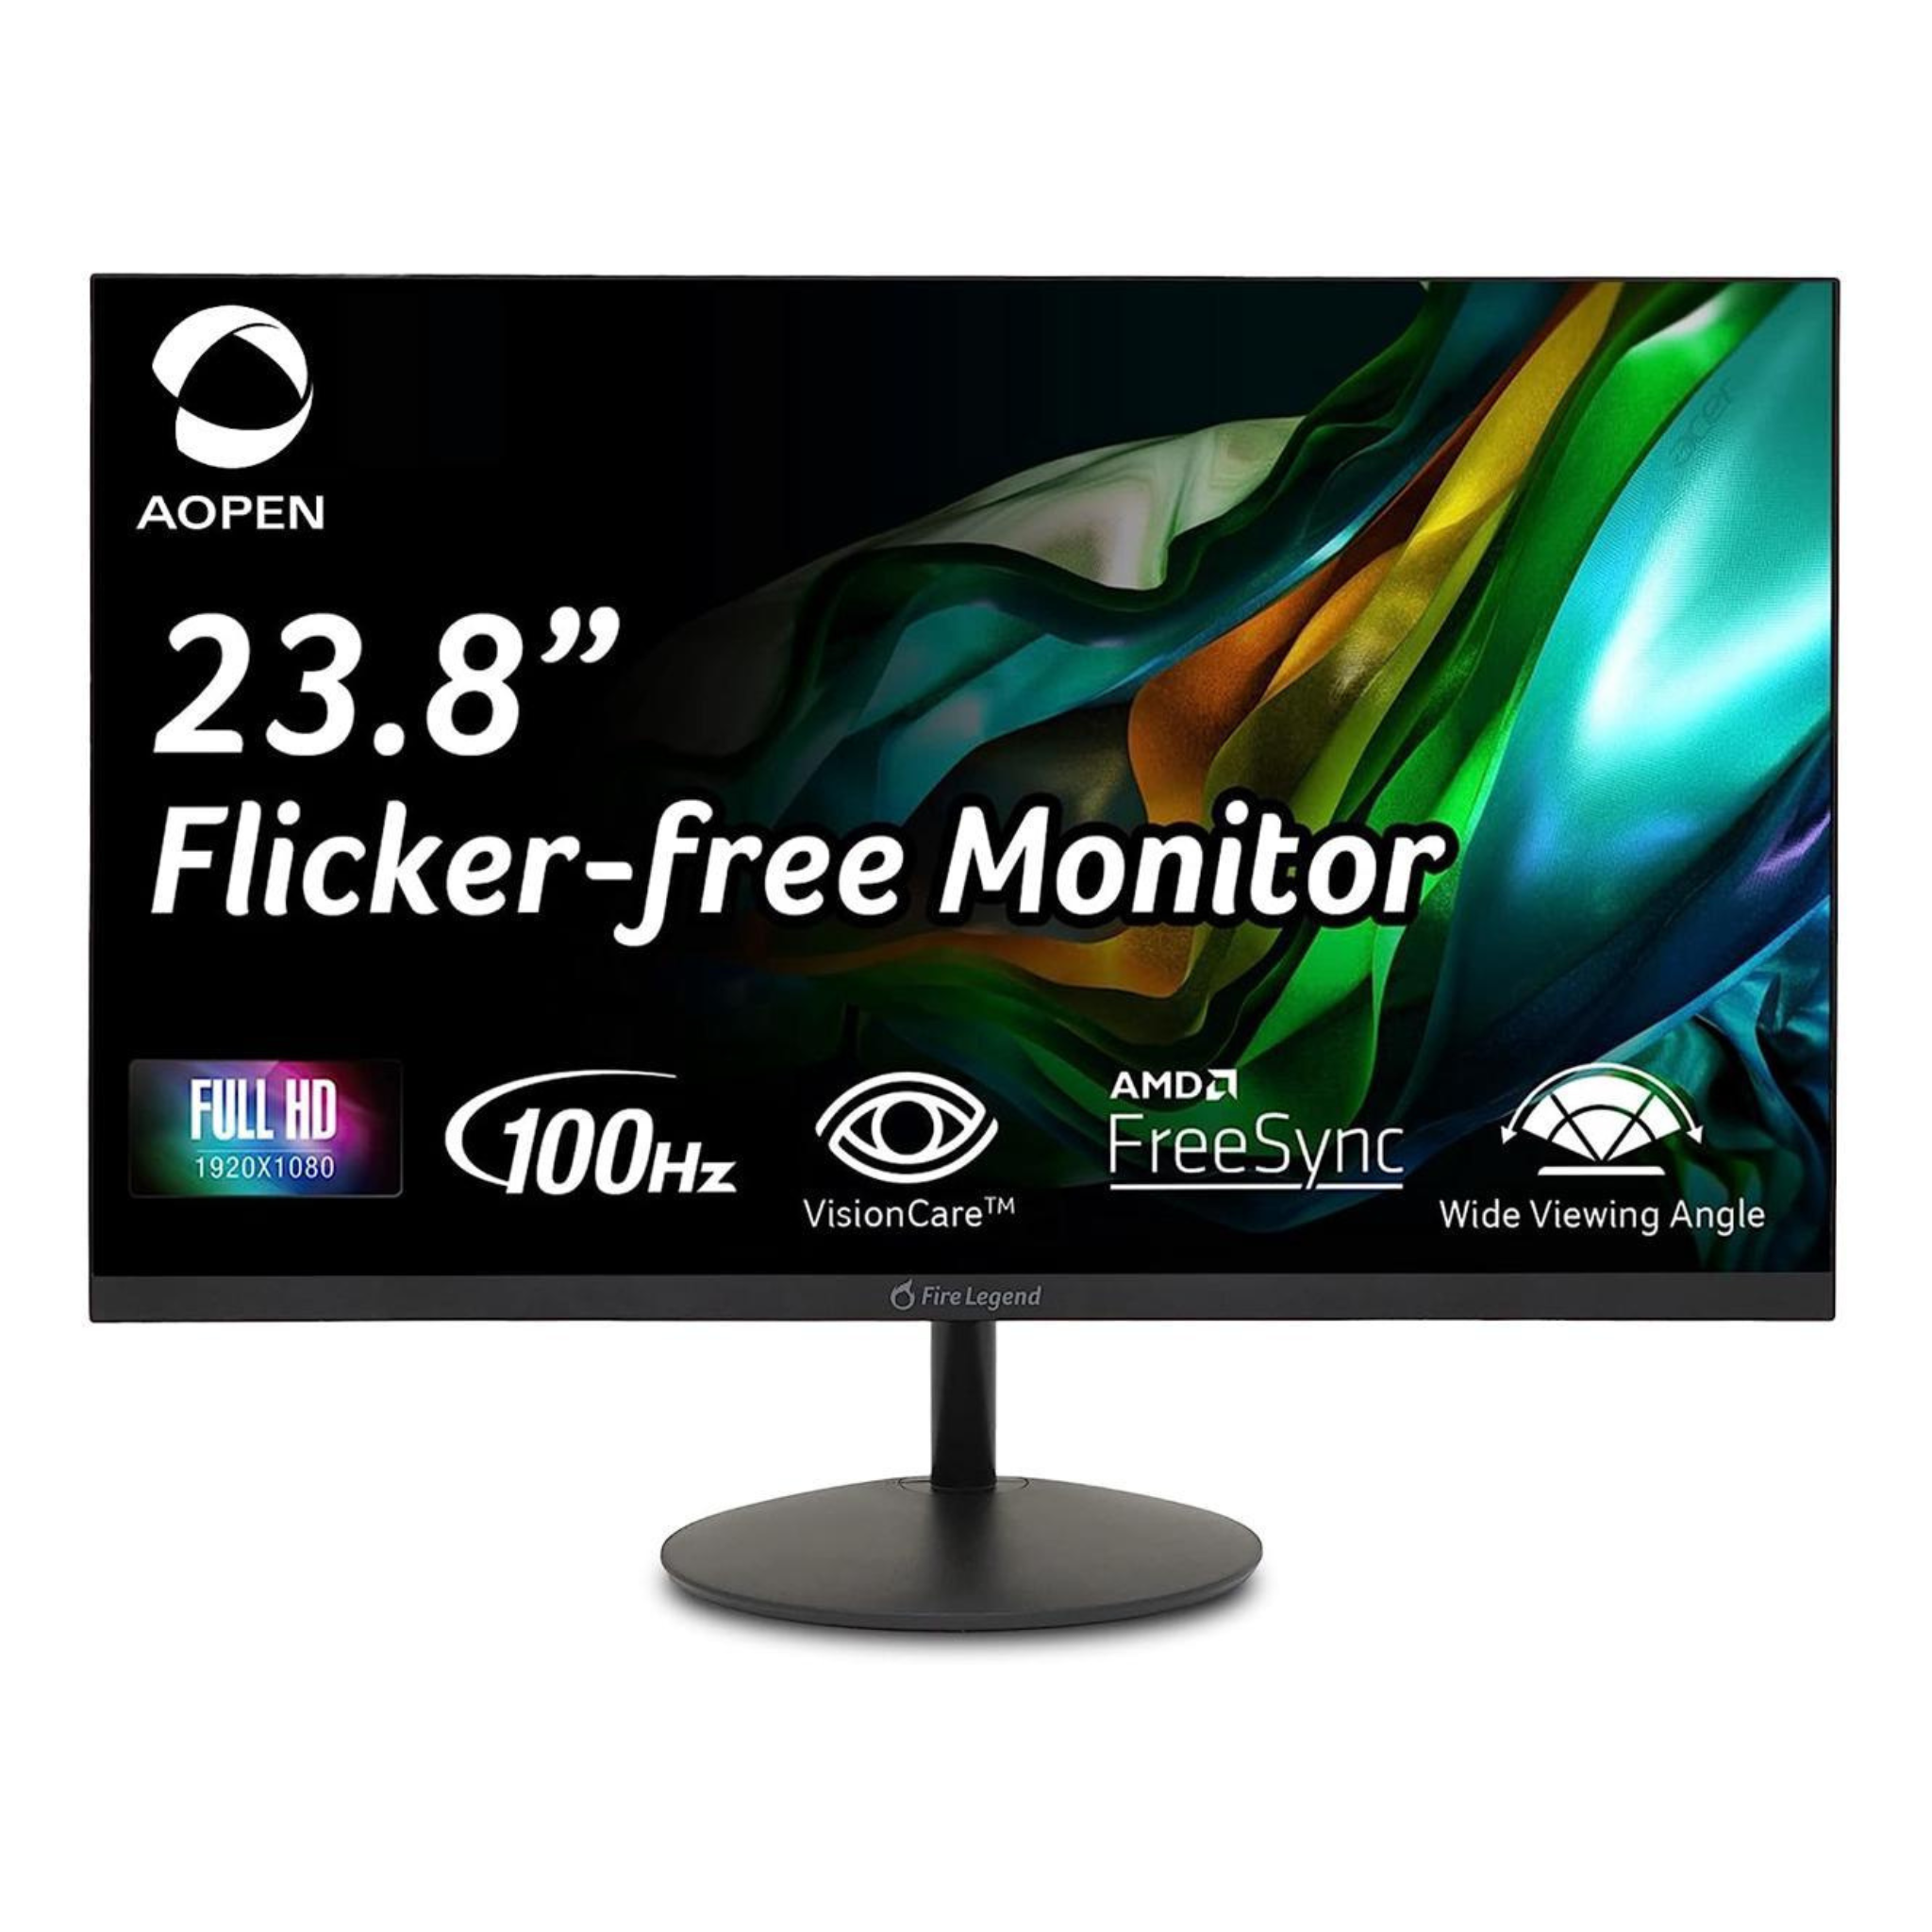 Aopen 24SA2Y Hbi 23.8" FHD LED Gaming Monitor